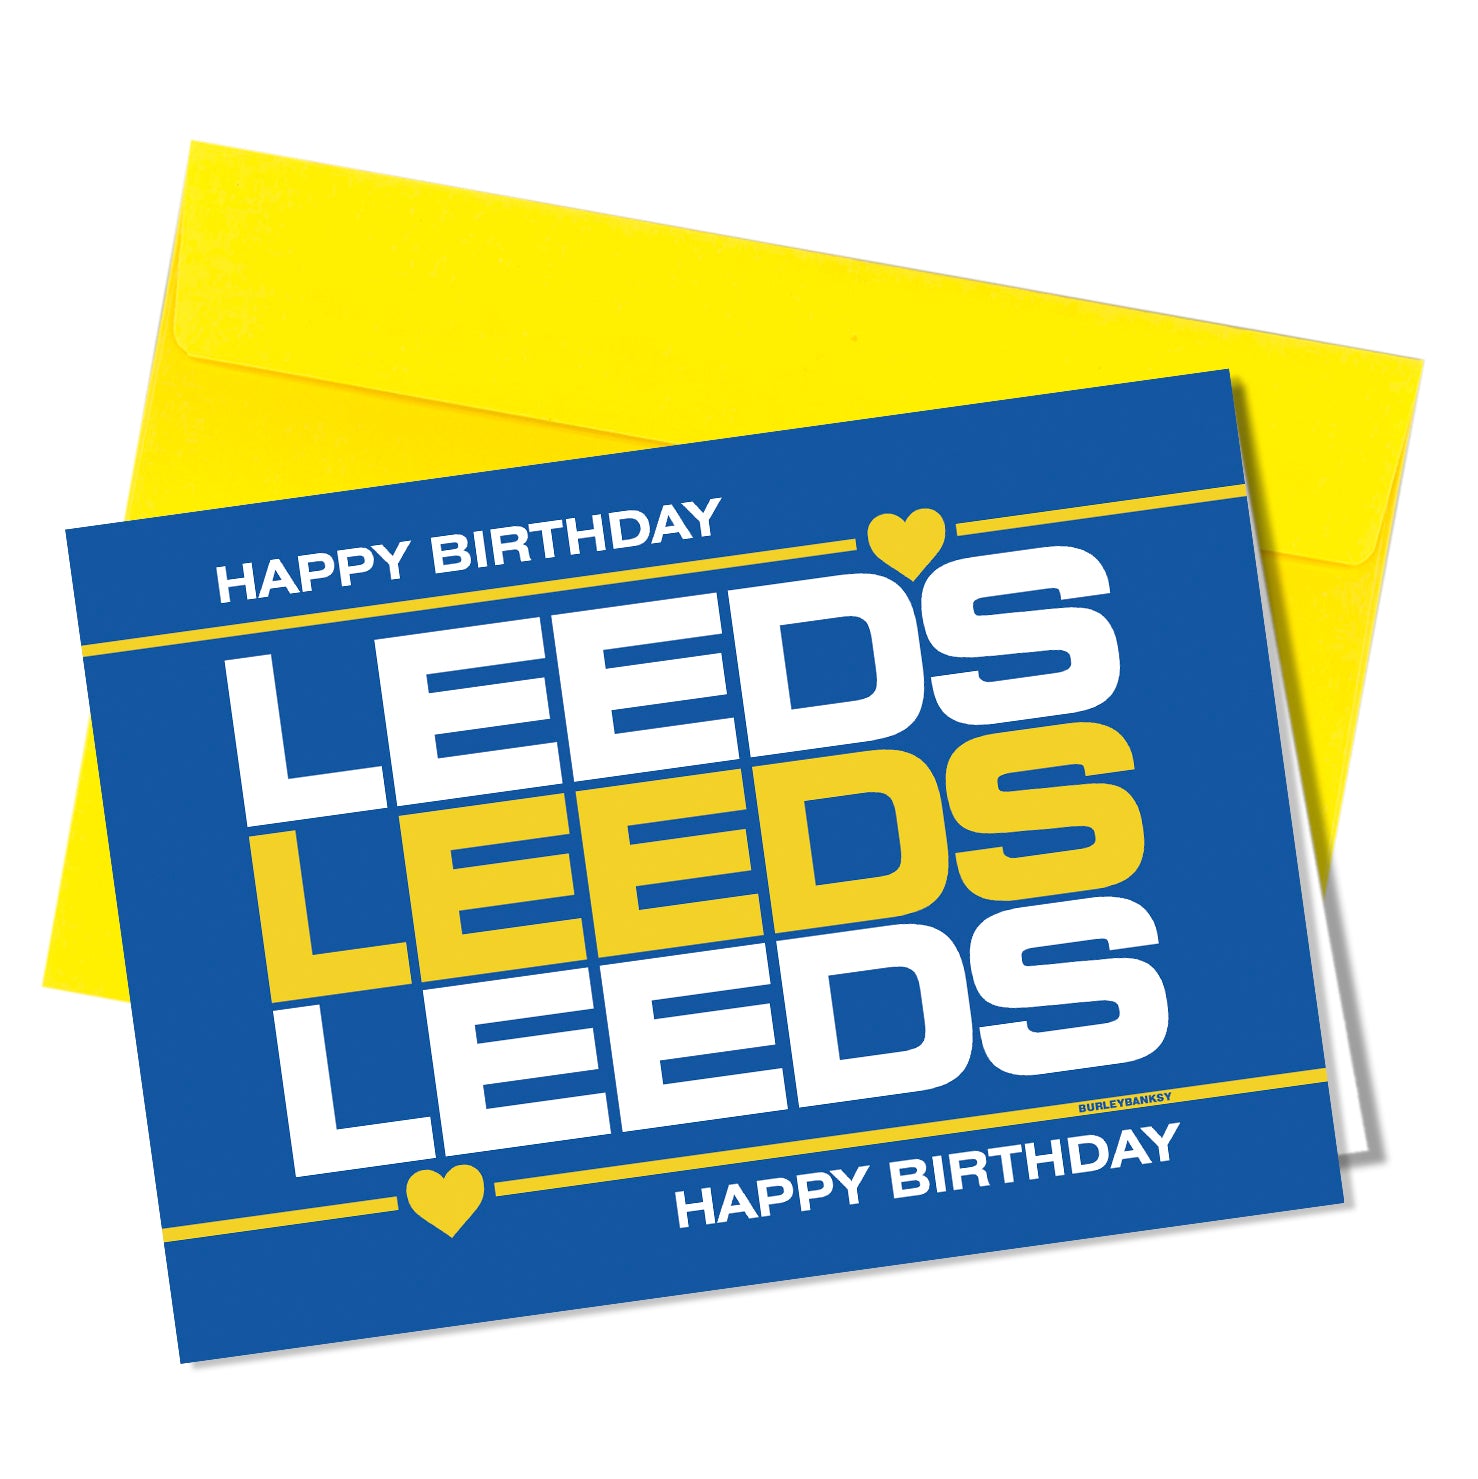 #BB008 Leeds Leeds Leeds